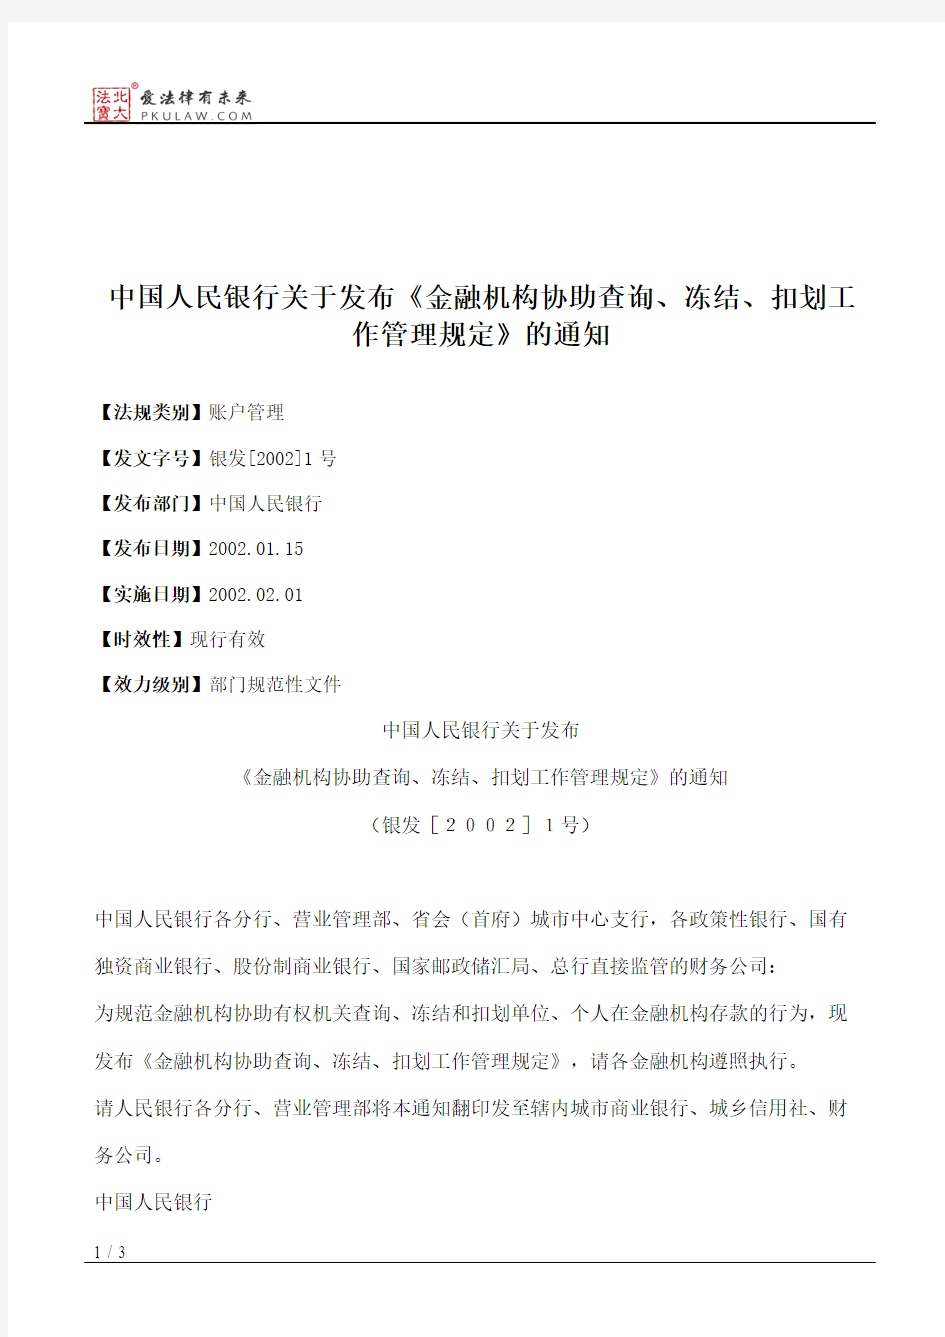 中国人民银行关于发布《金融机构协助查询、冻结、扣划工作管理规